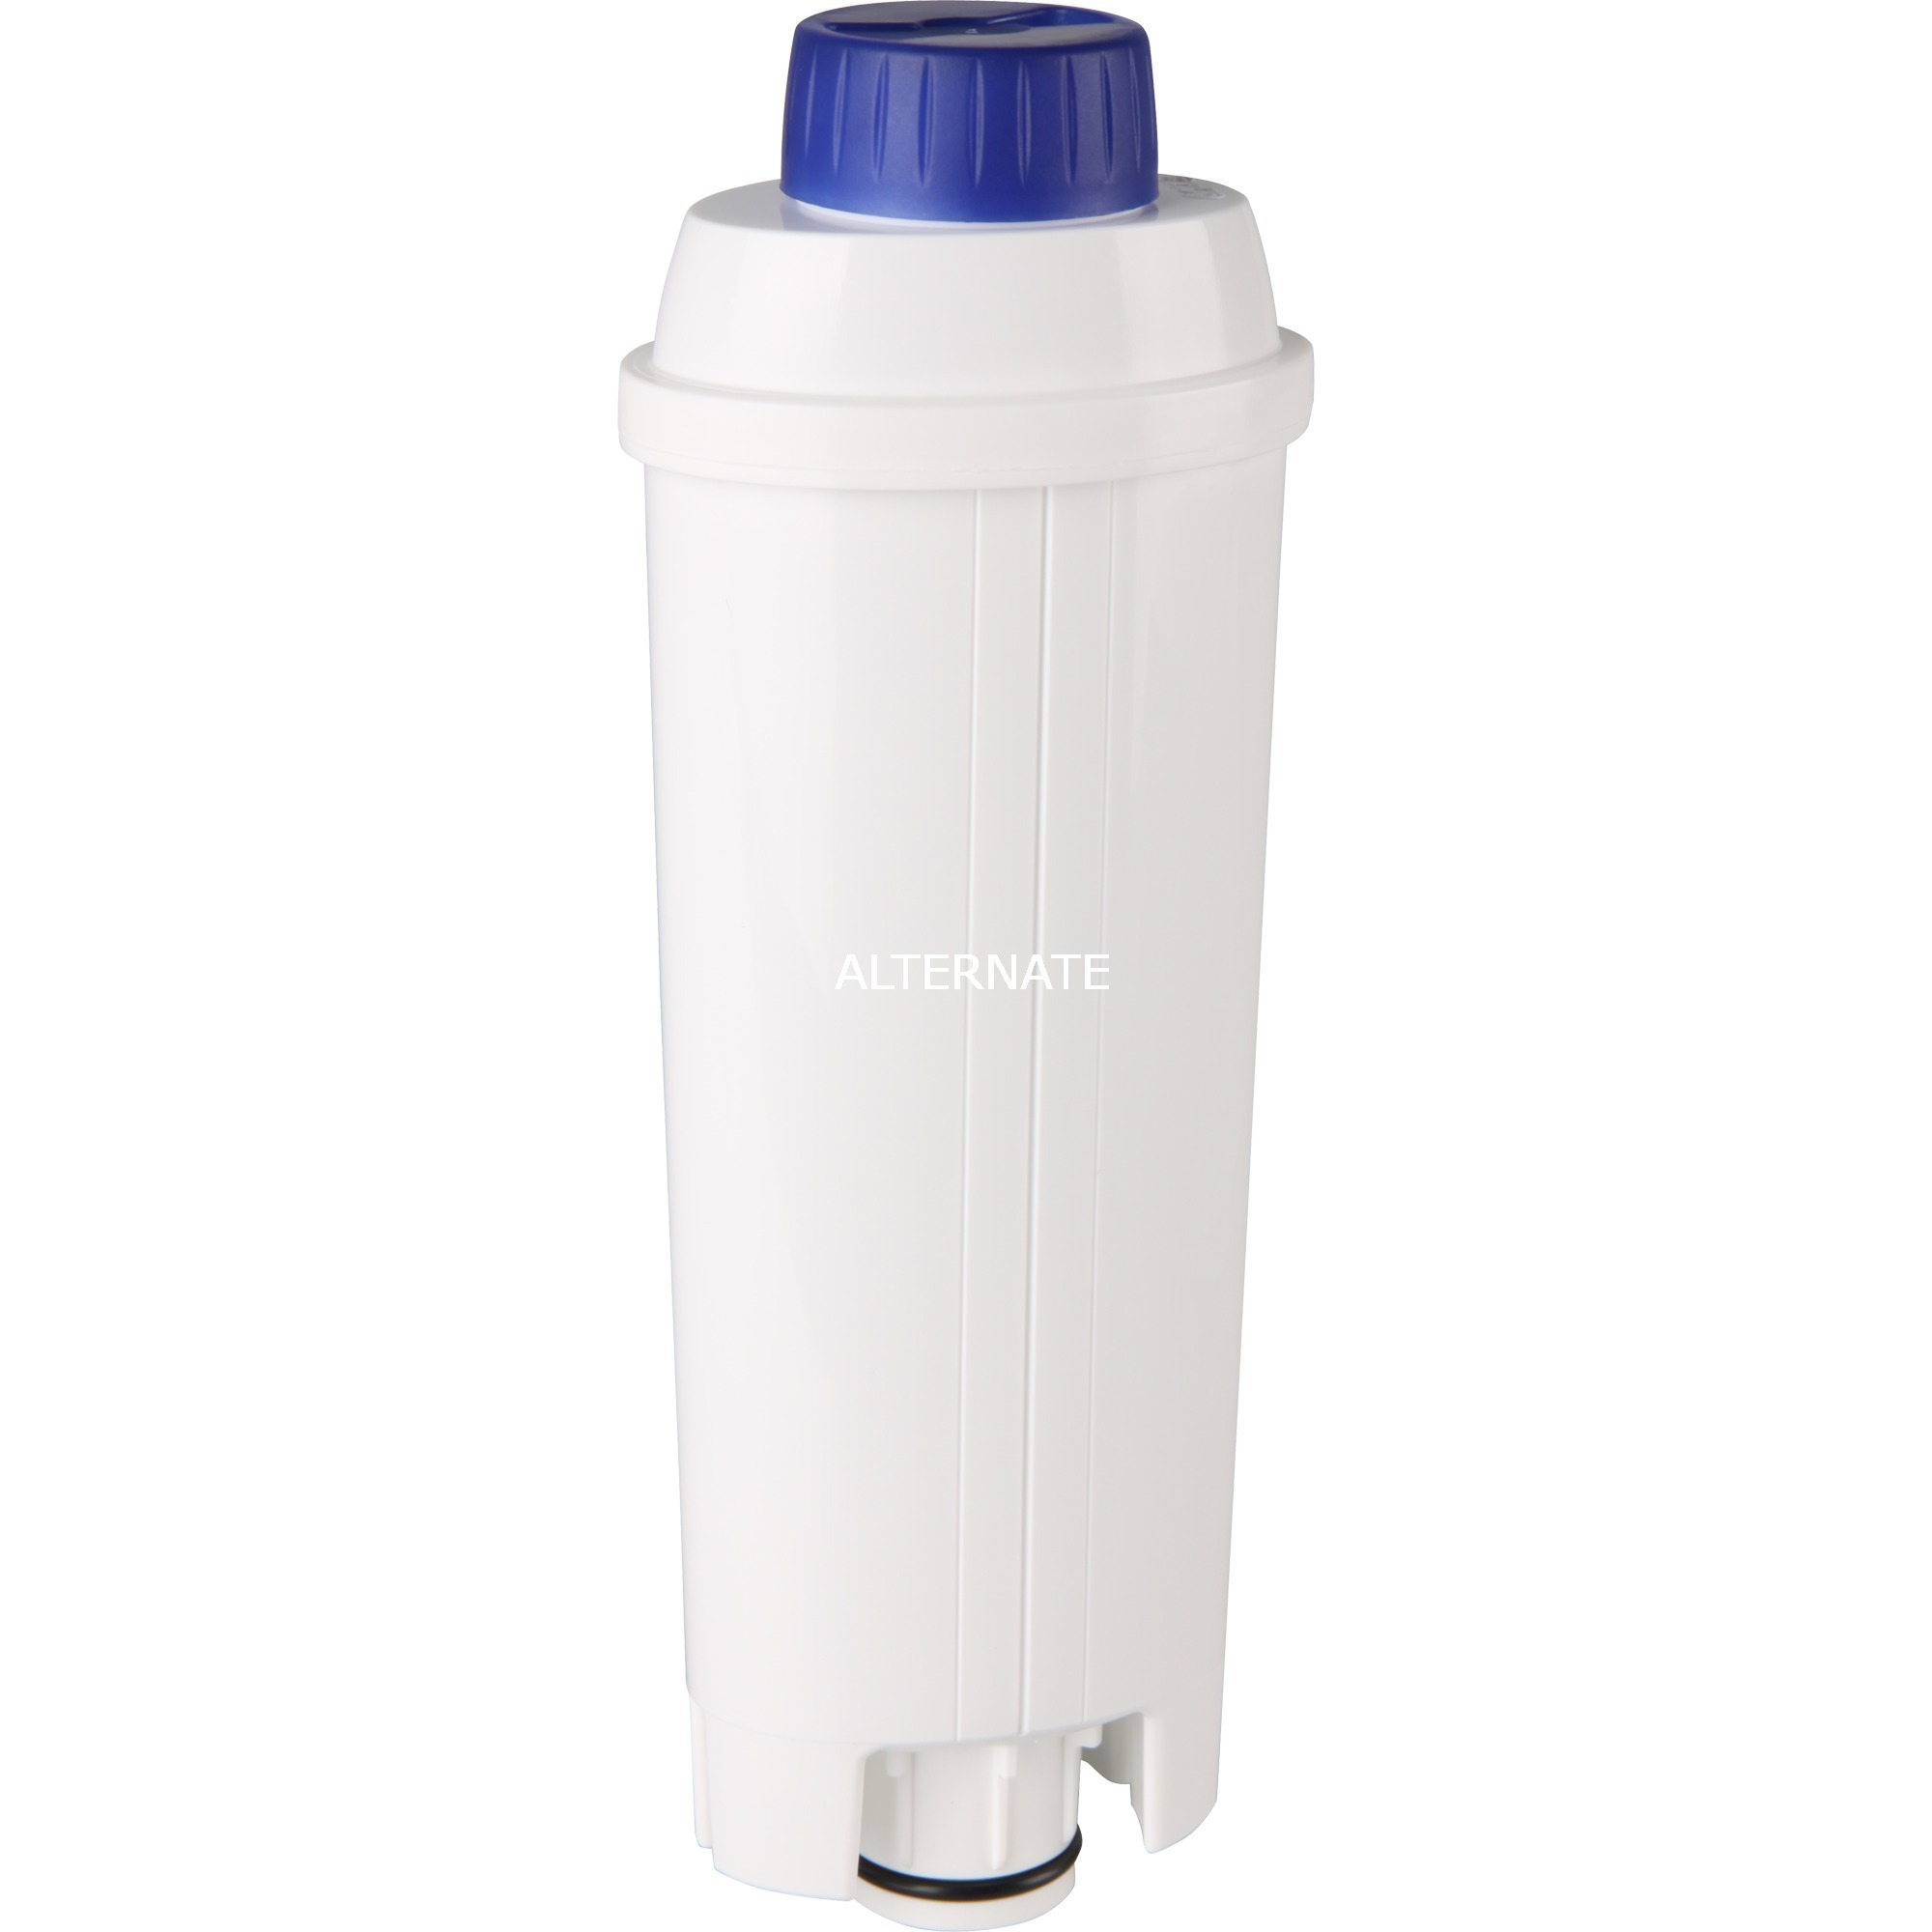 Image of Alternate - Wasserfilter DLSC002 online einkaufen bei Alternate